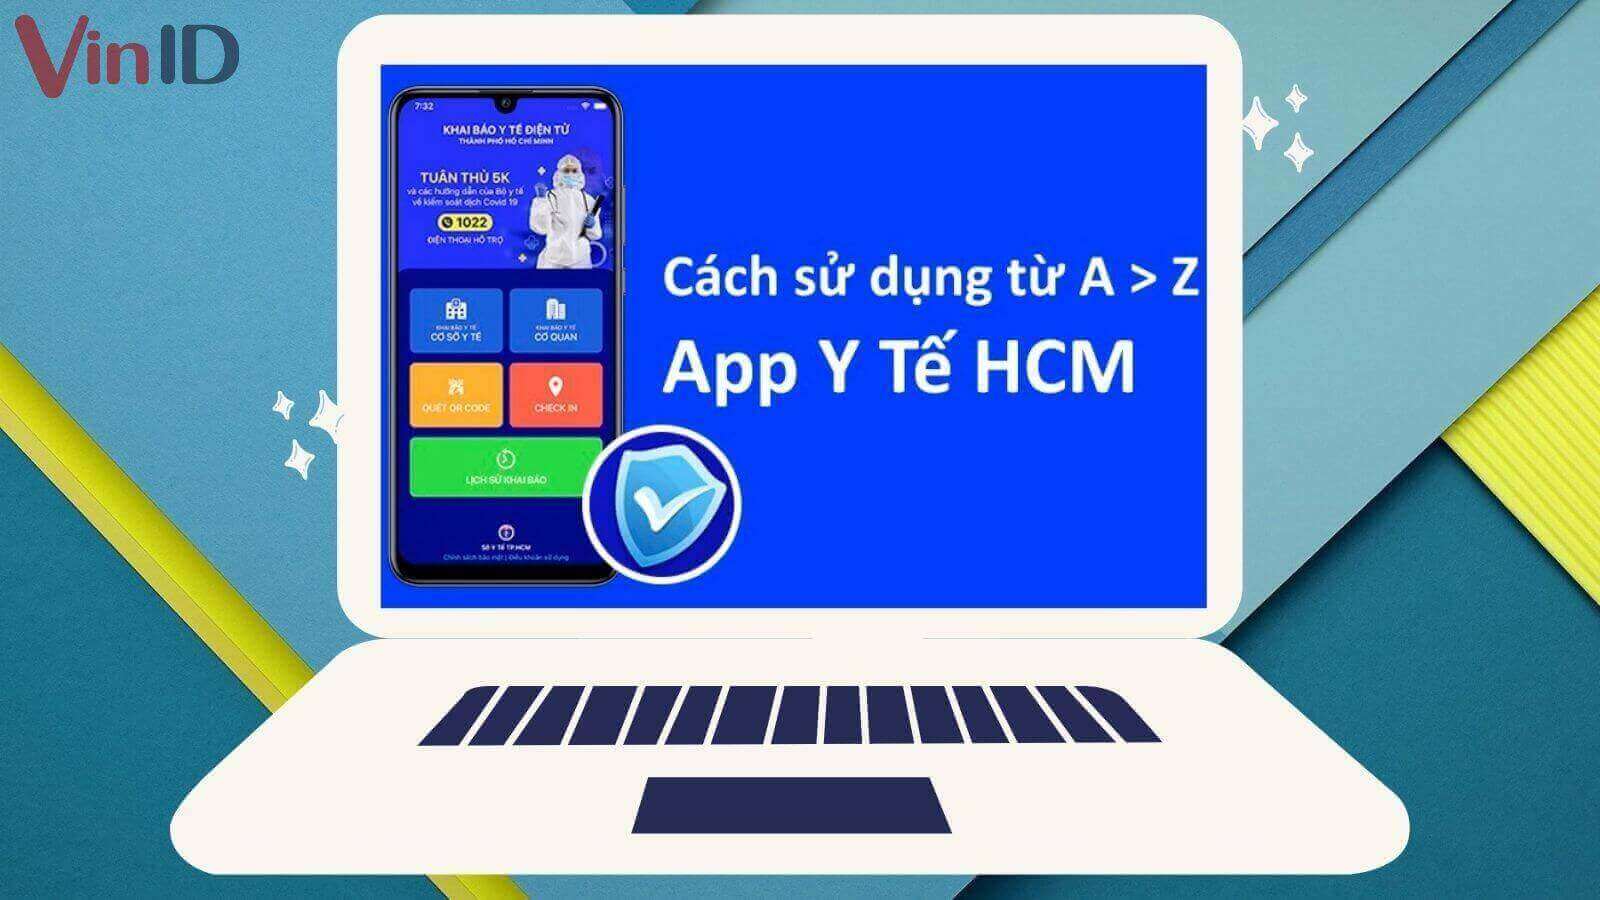 Hướng dẫn khai báo y tế qua app Y Tế HCM